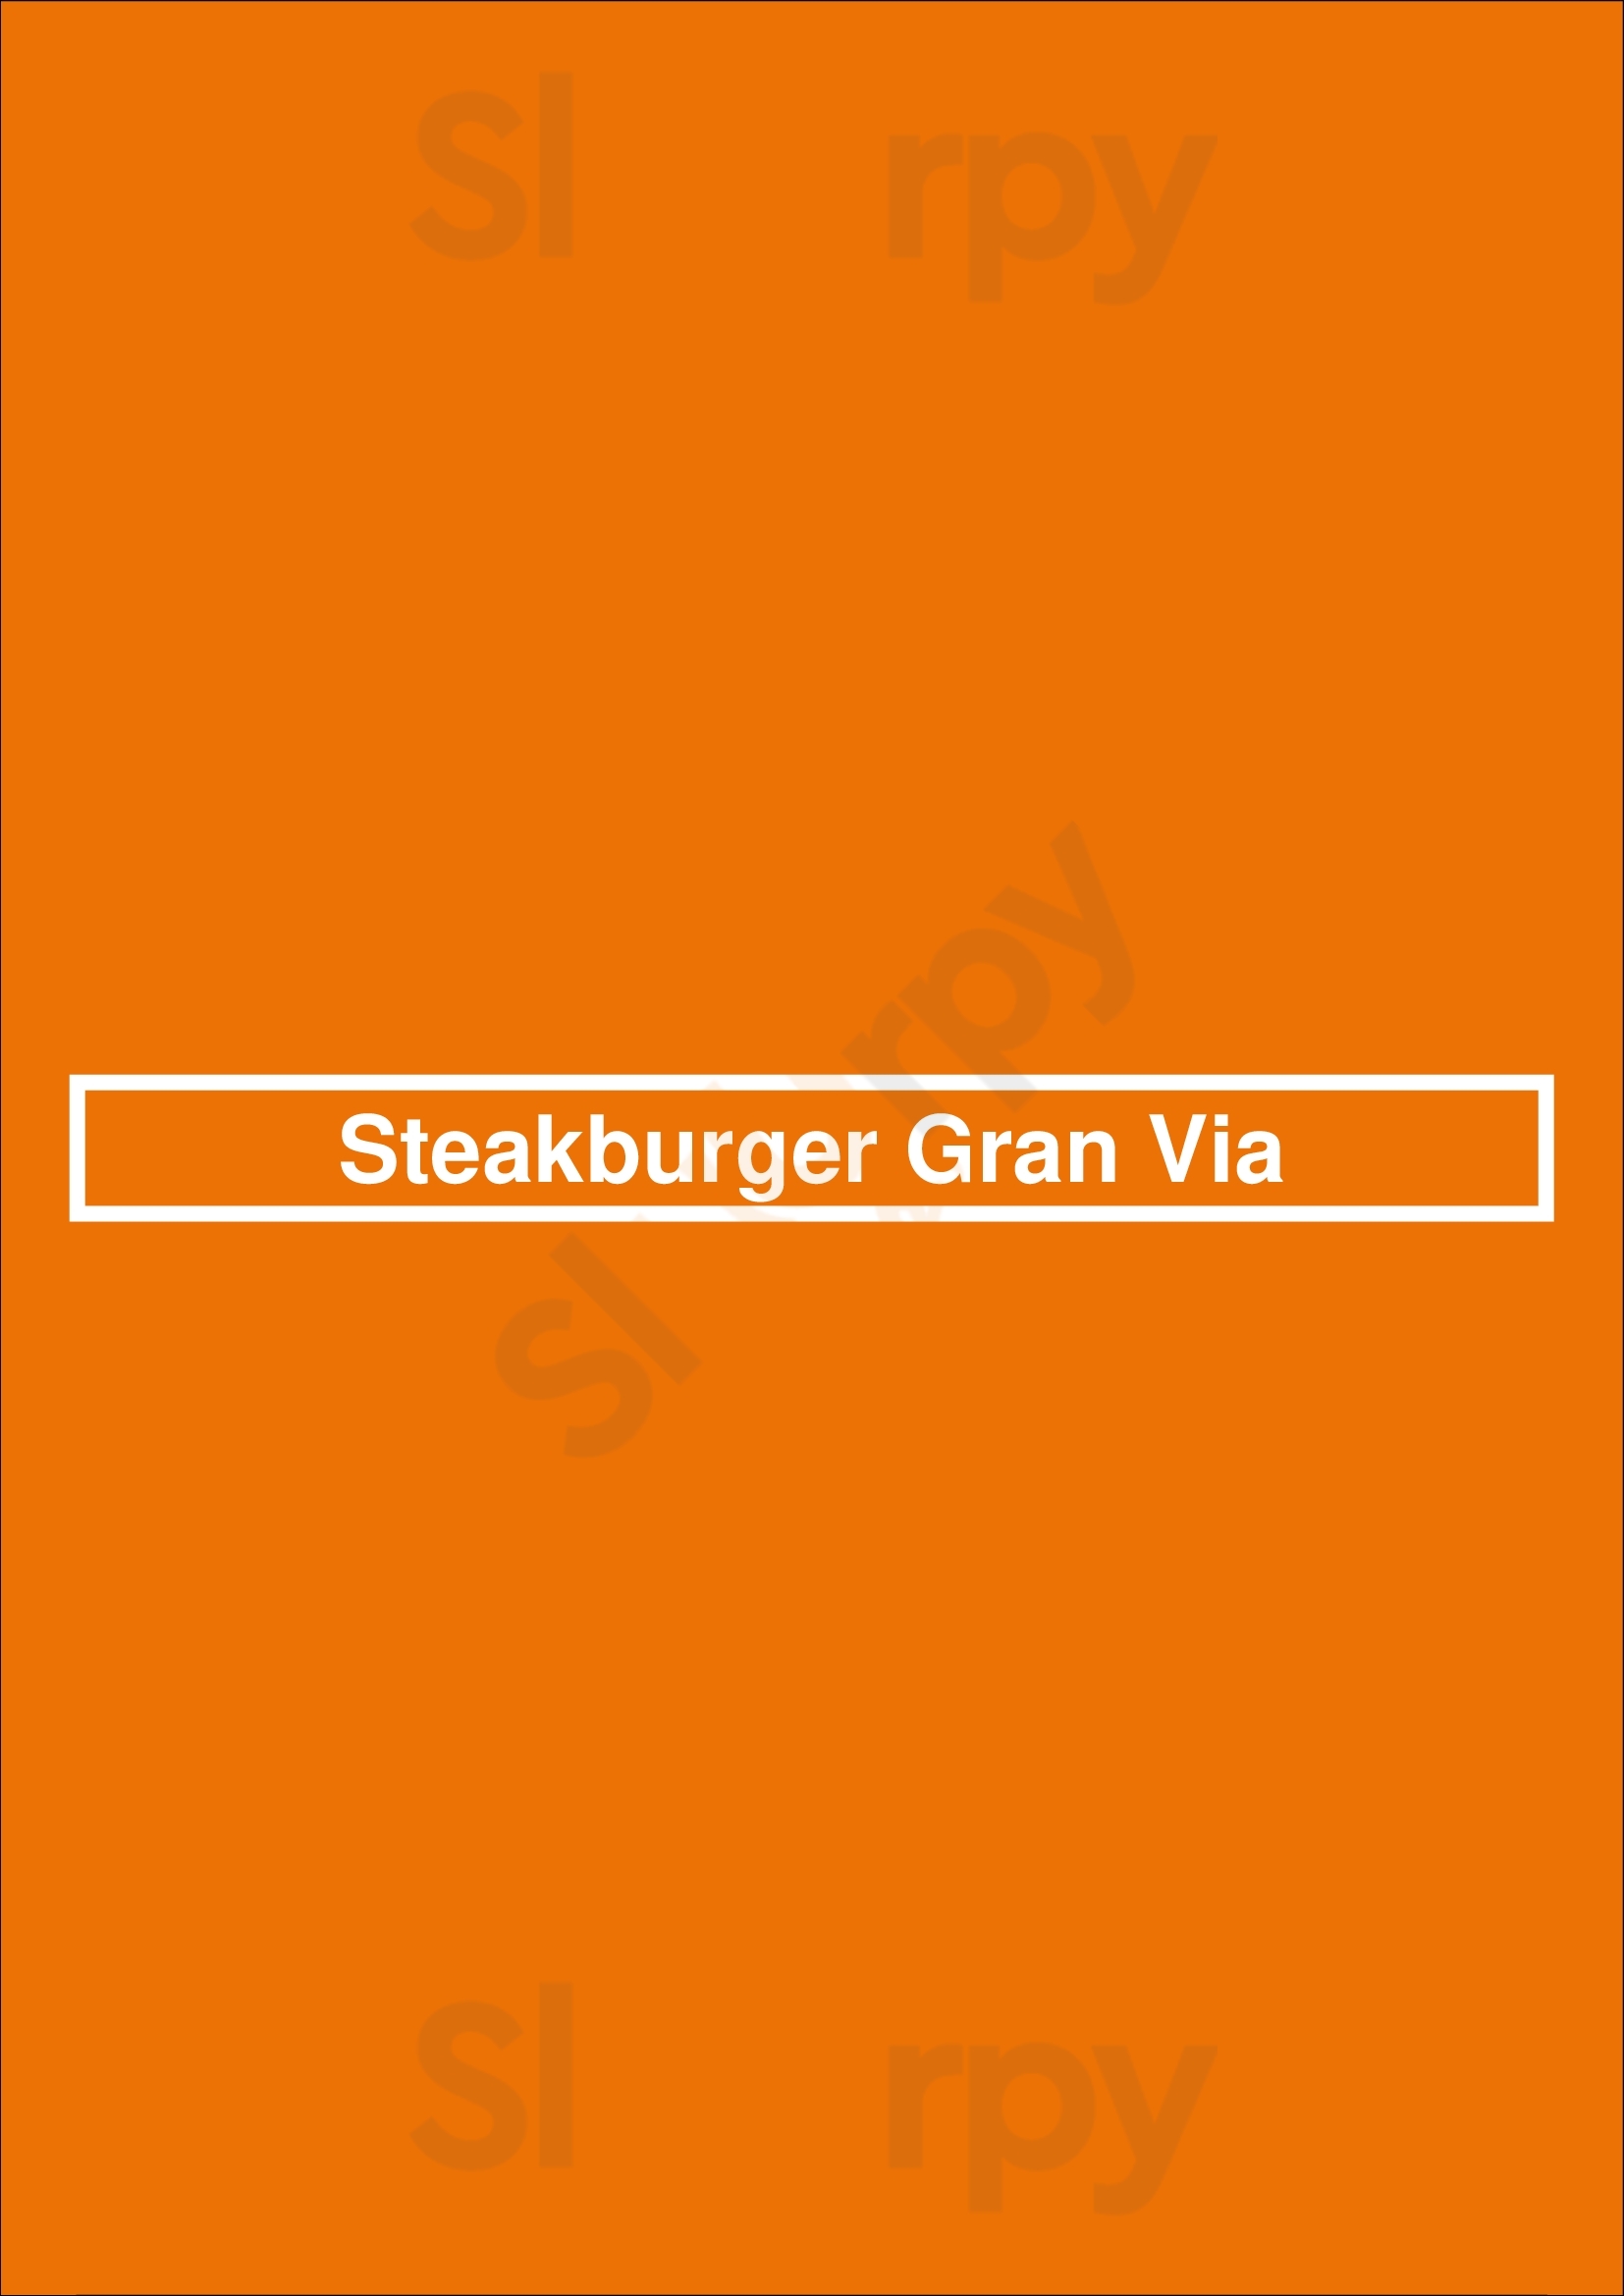 Steakburger Gran Vía 16 Madrid Menu - 1